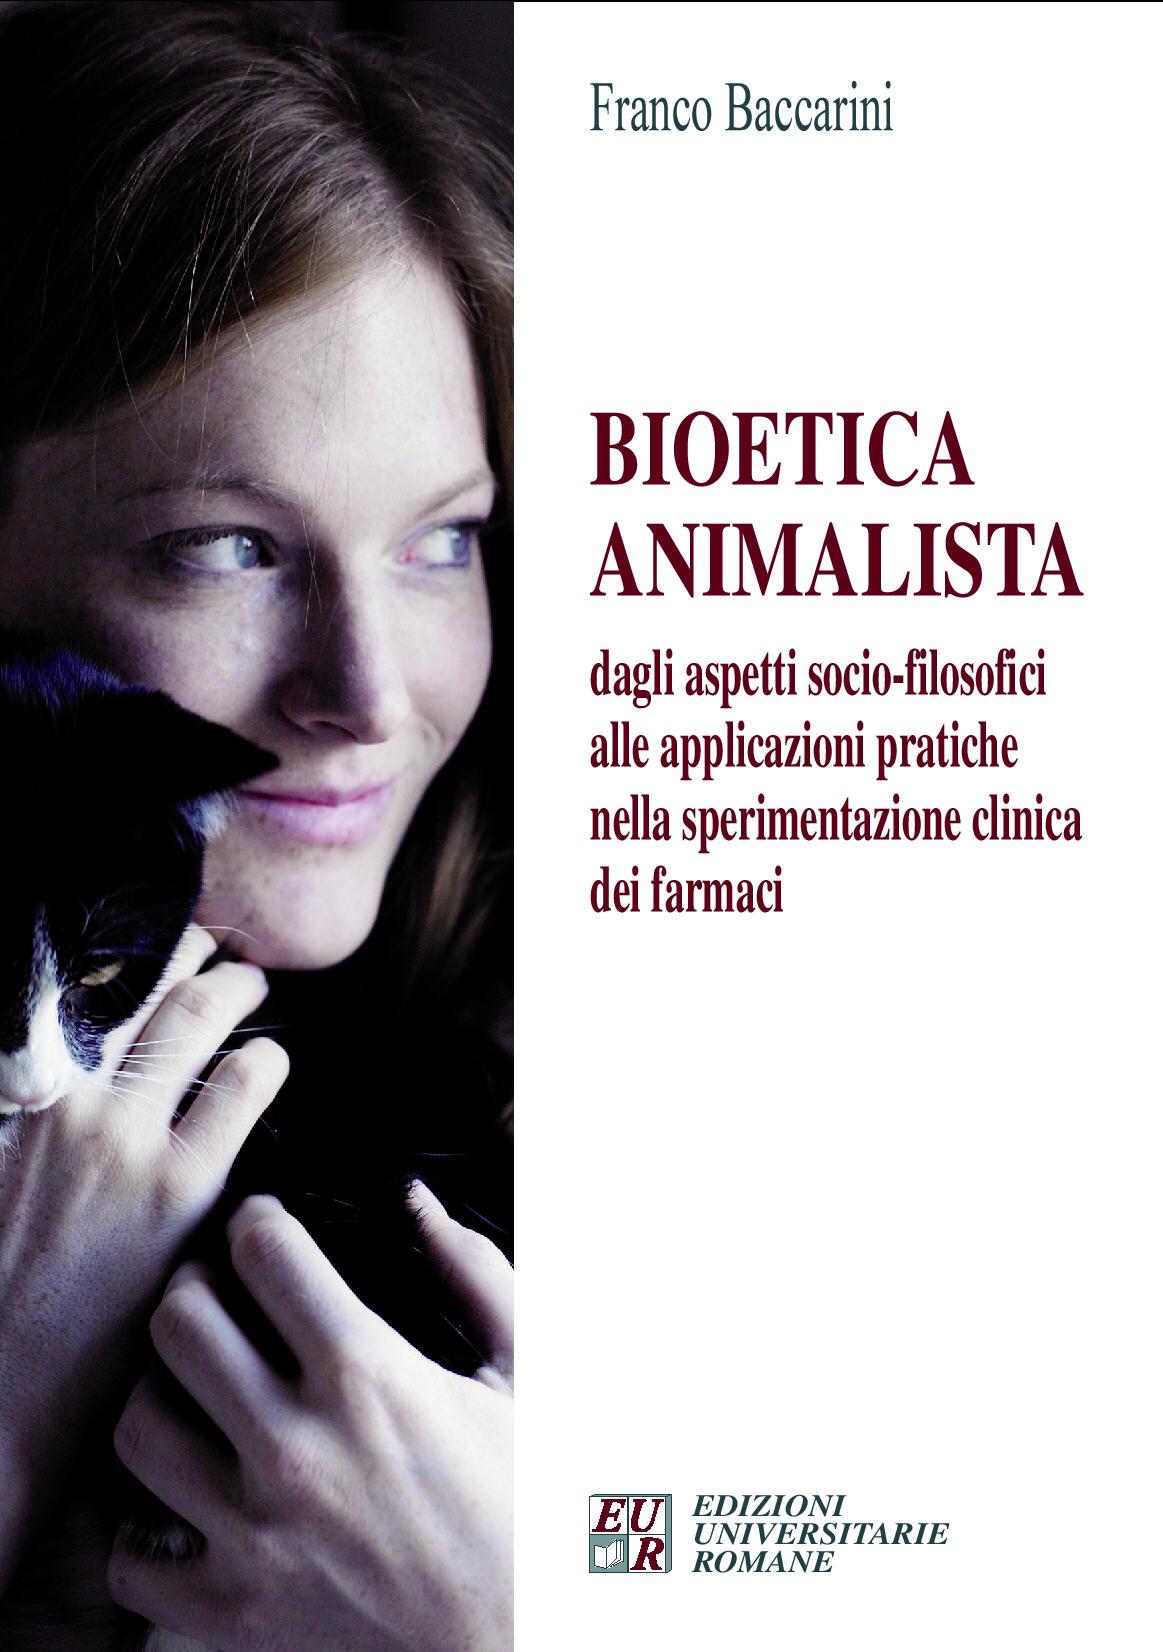 bioetica-animalista-di-f-baccarini-edizioni-universitarie-romane-cover